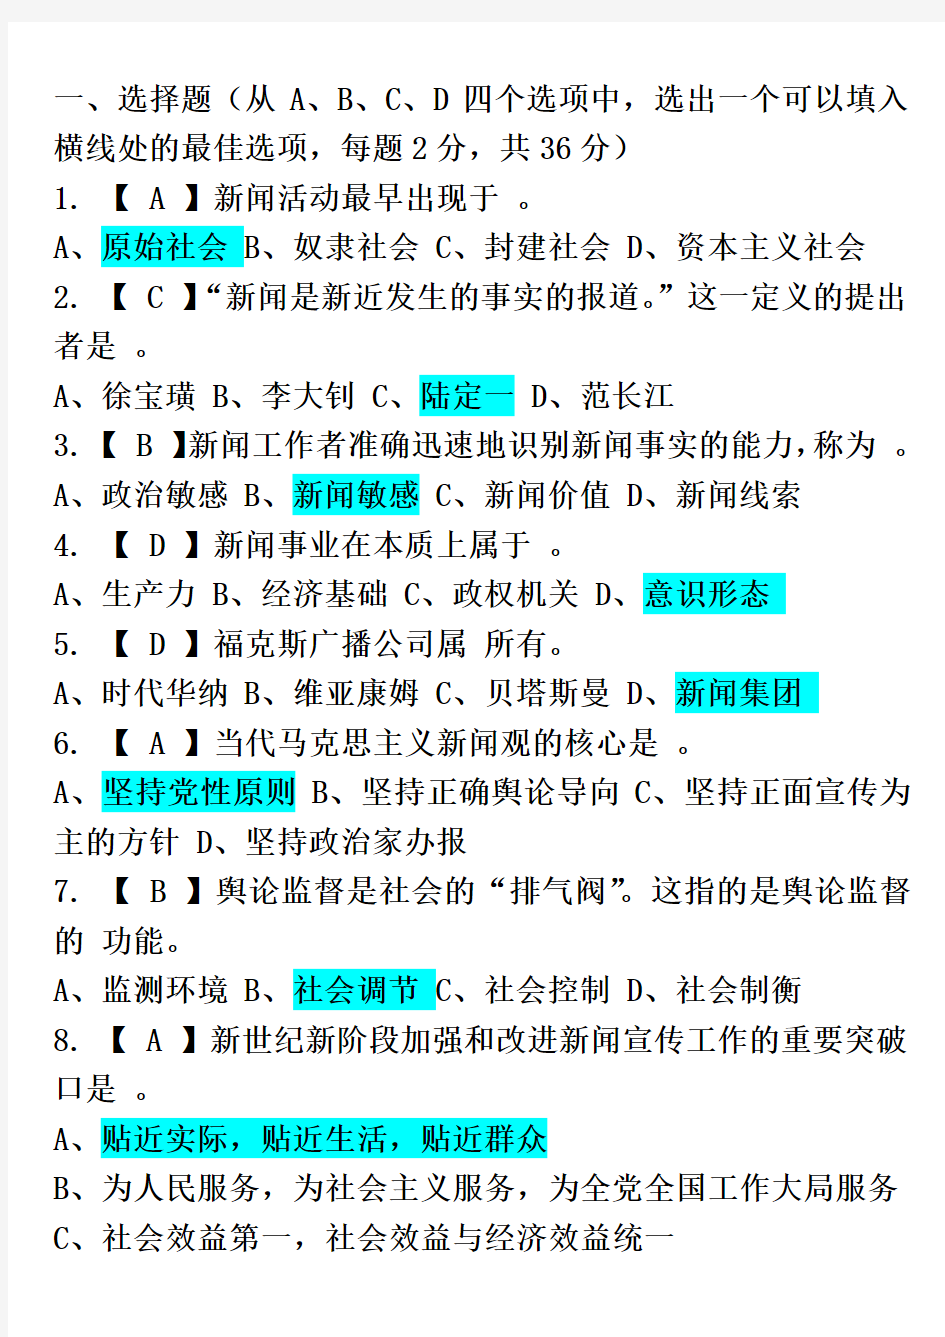 中国新闻社 笔试 综合知识(有标准答案)